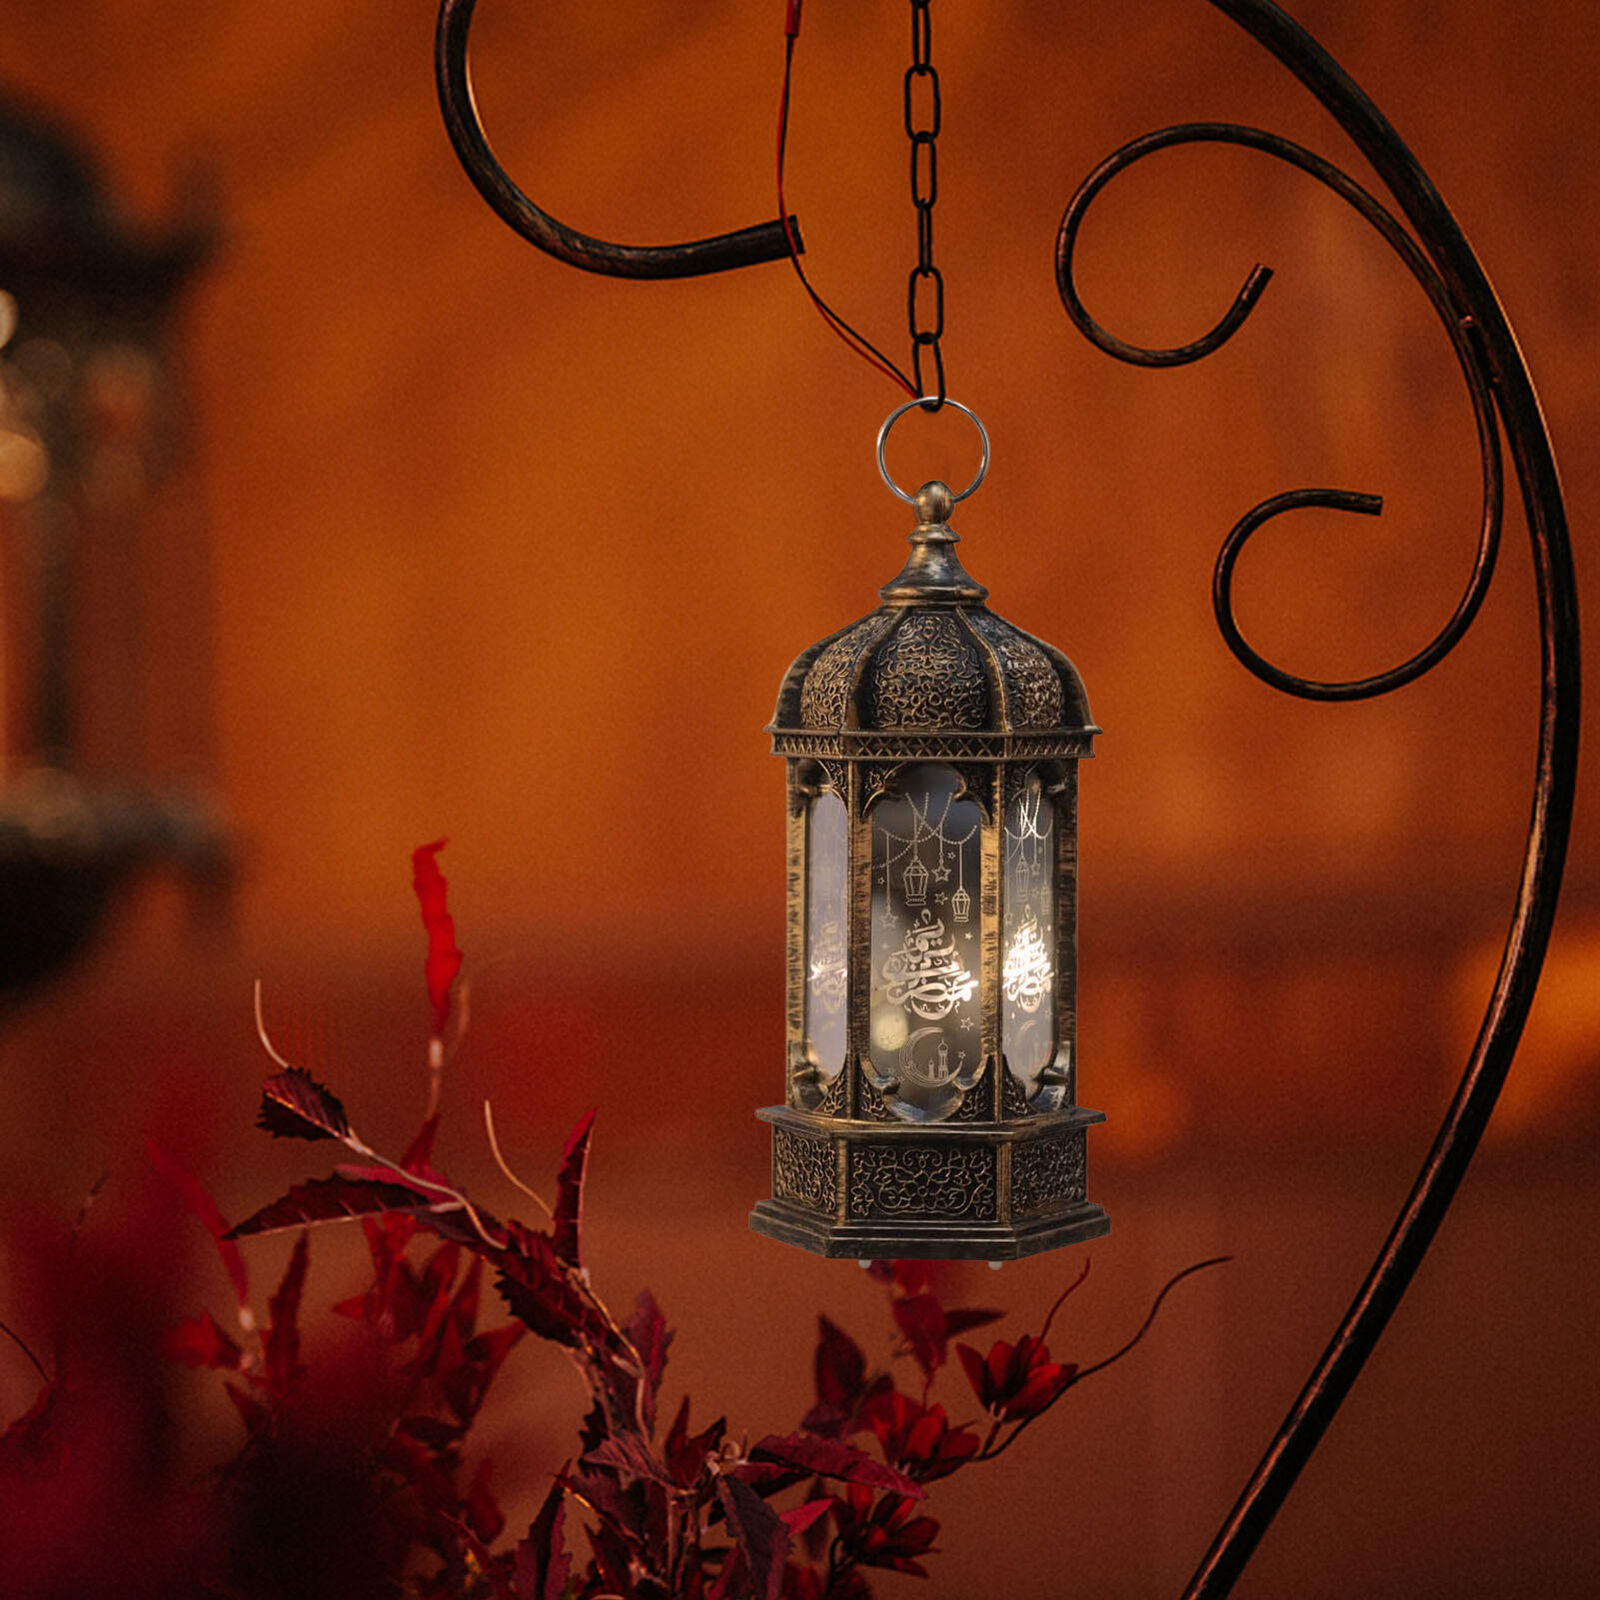 Guirxiété lumineuse LED pour Ramadan, lune, étoile, lumières de mosquée,  lanterne Eid Mubarak, décor rigourmusulman, fournitures